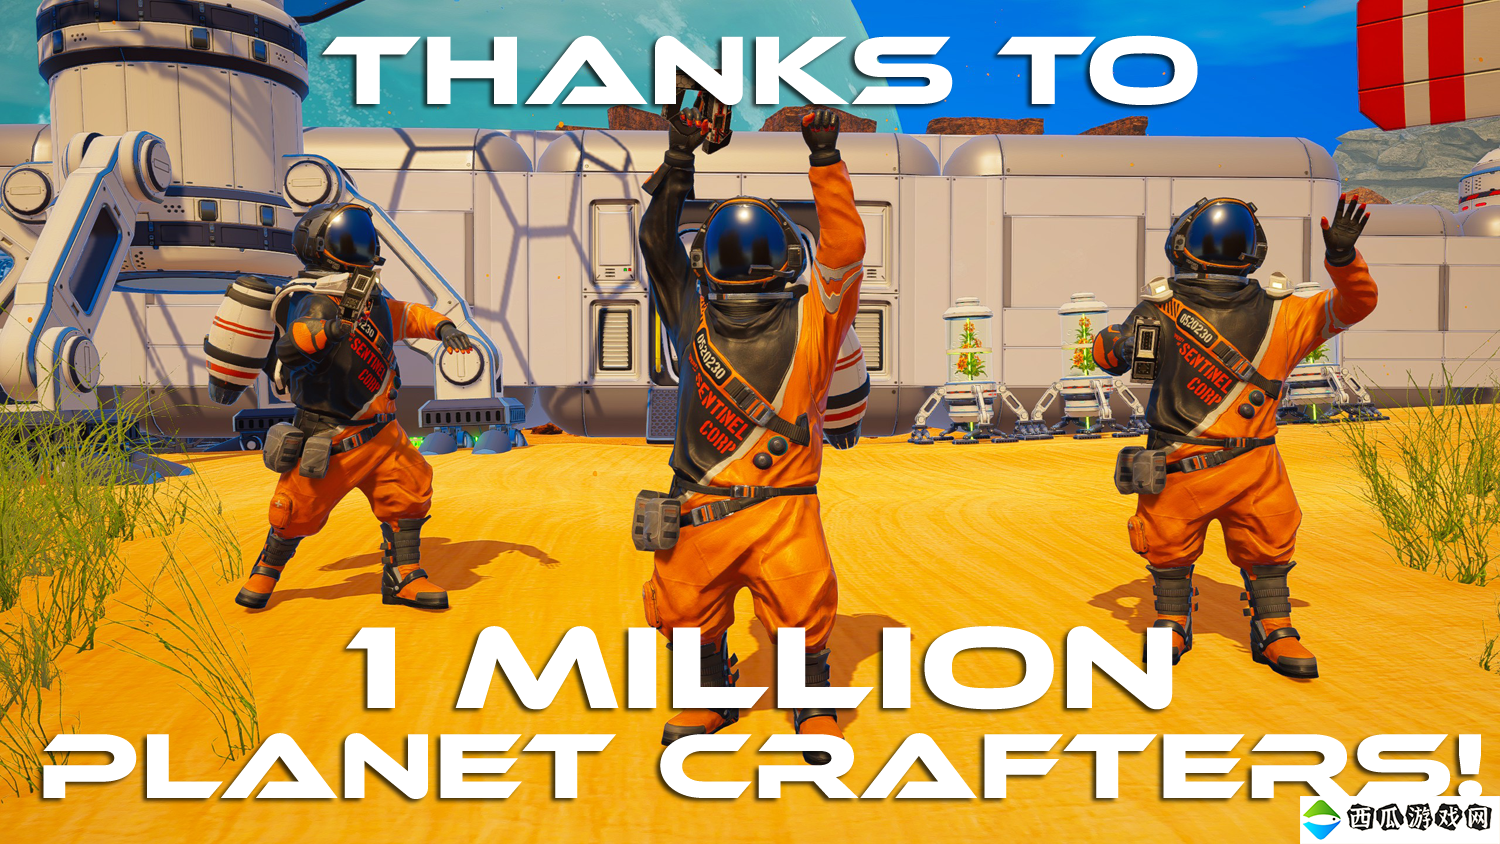 太空生存建设游戏《星球工匠》销量已突破100万 更多新内容准备中